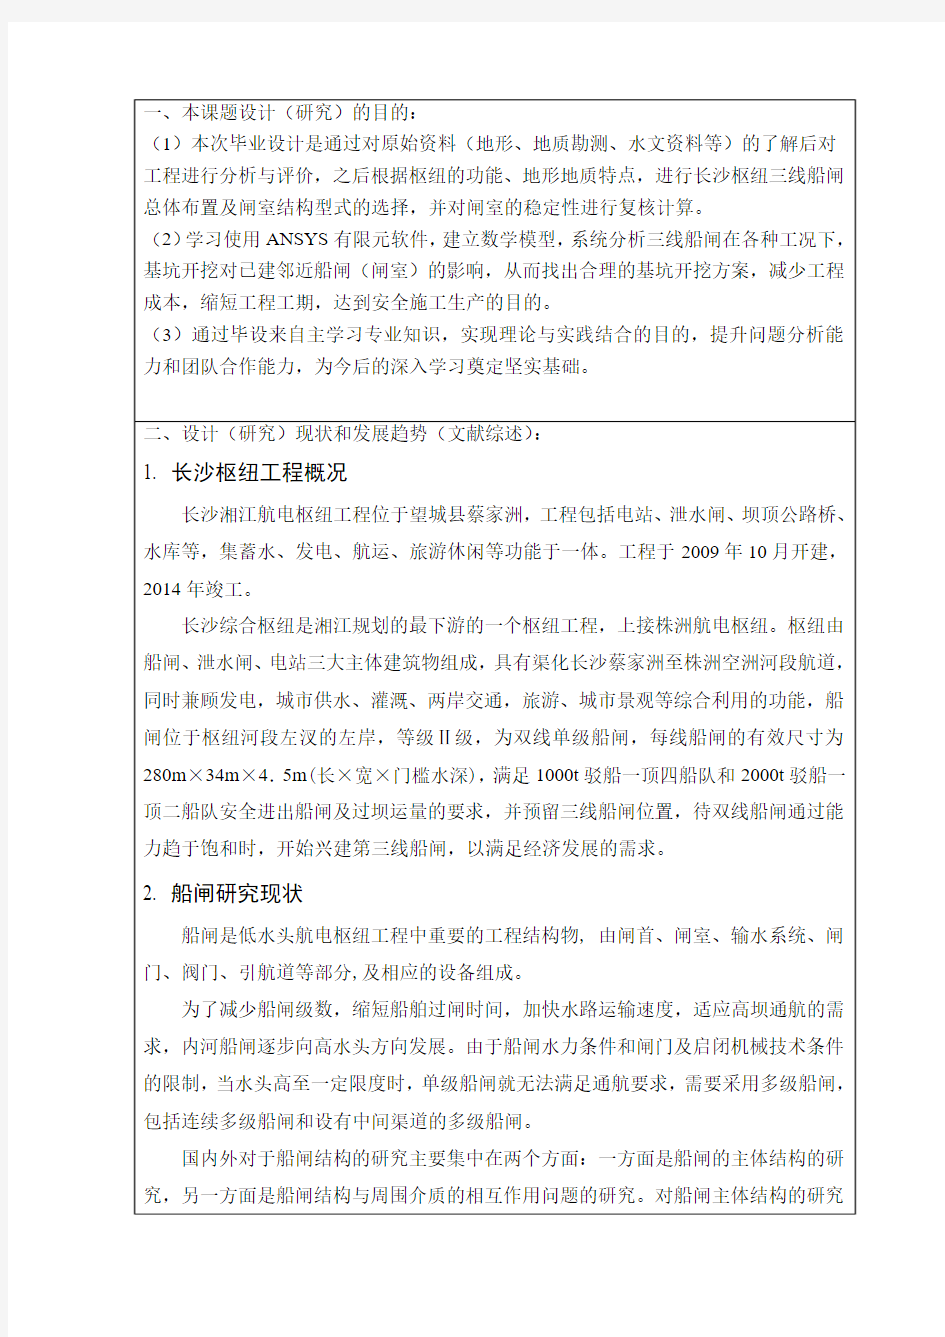 长沙理工_毕业设计(论文)开题报告——徐大彬 - 最终版